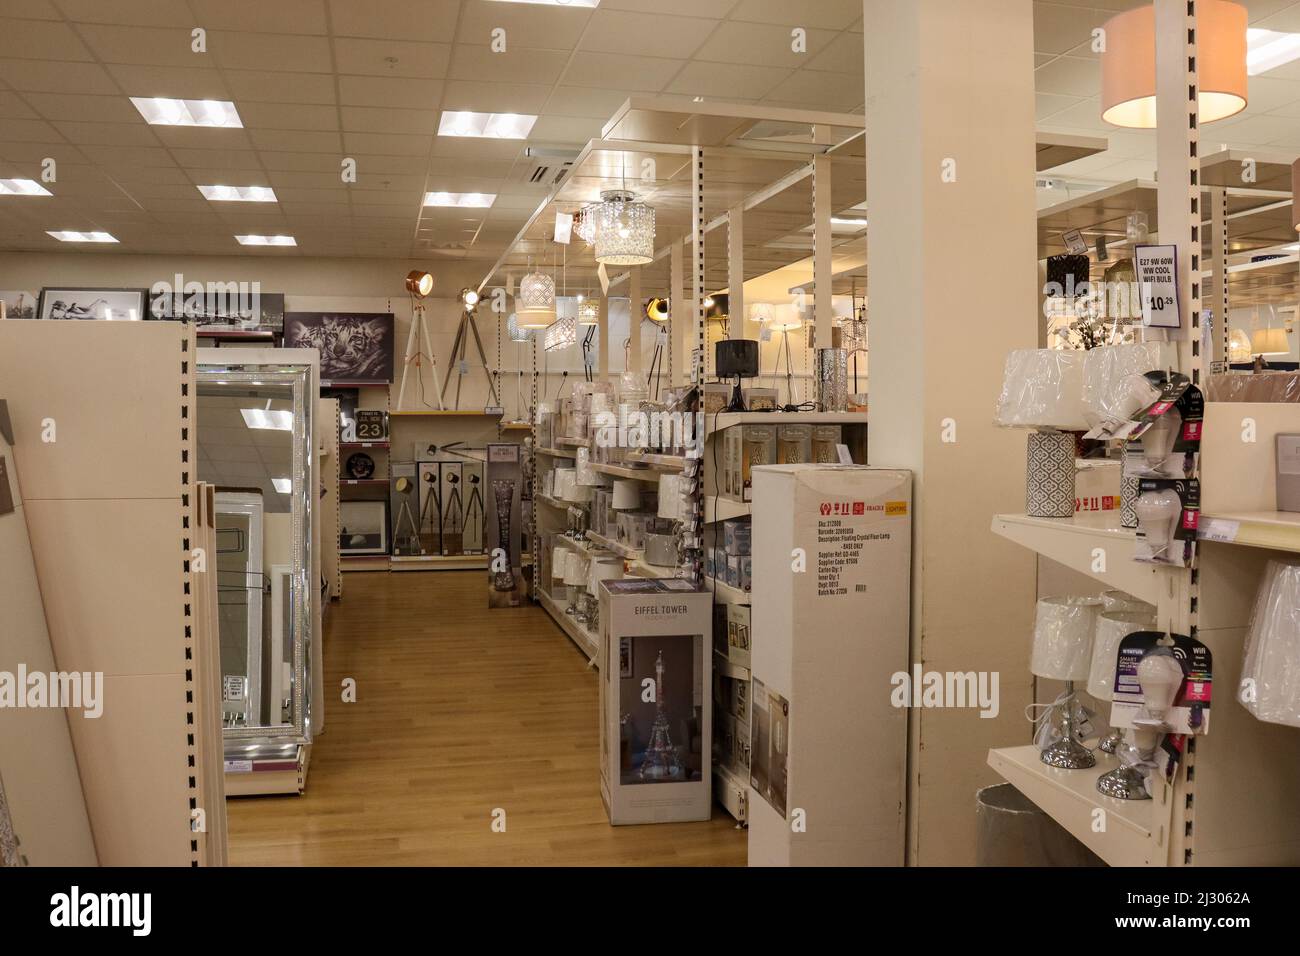 À l'intérieur d'une boutique de produits pour la maison, montrant des étagères avec des lampes, des miroirs et des plafonniers suspendus Banque D'Images